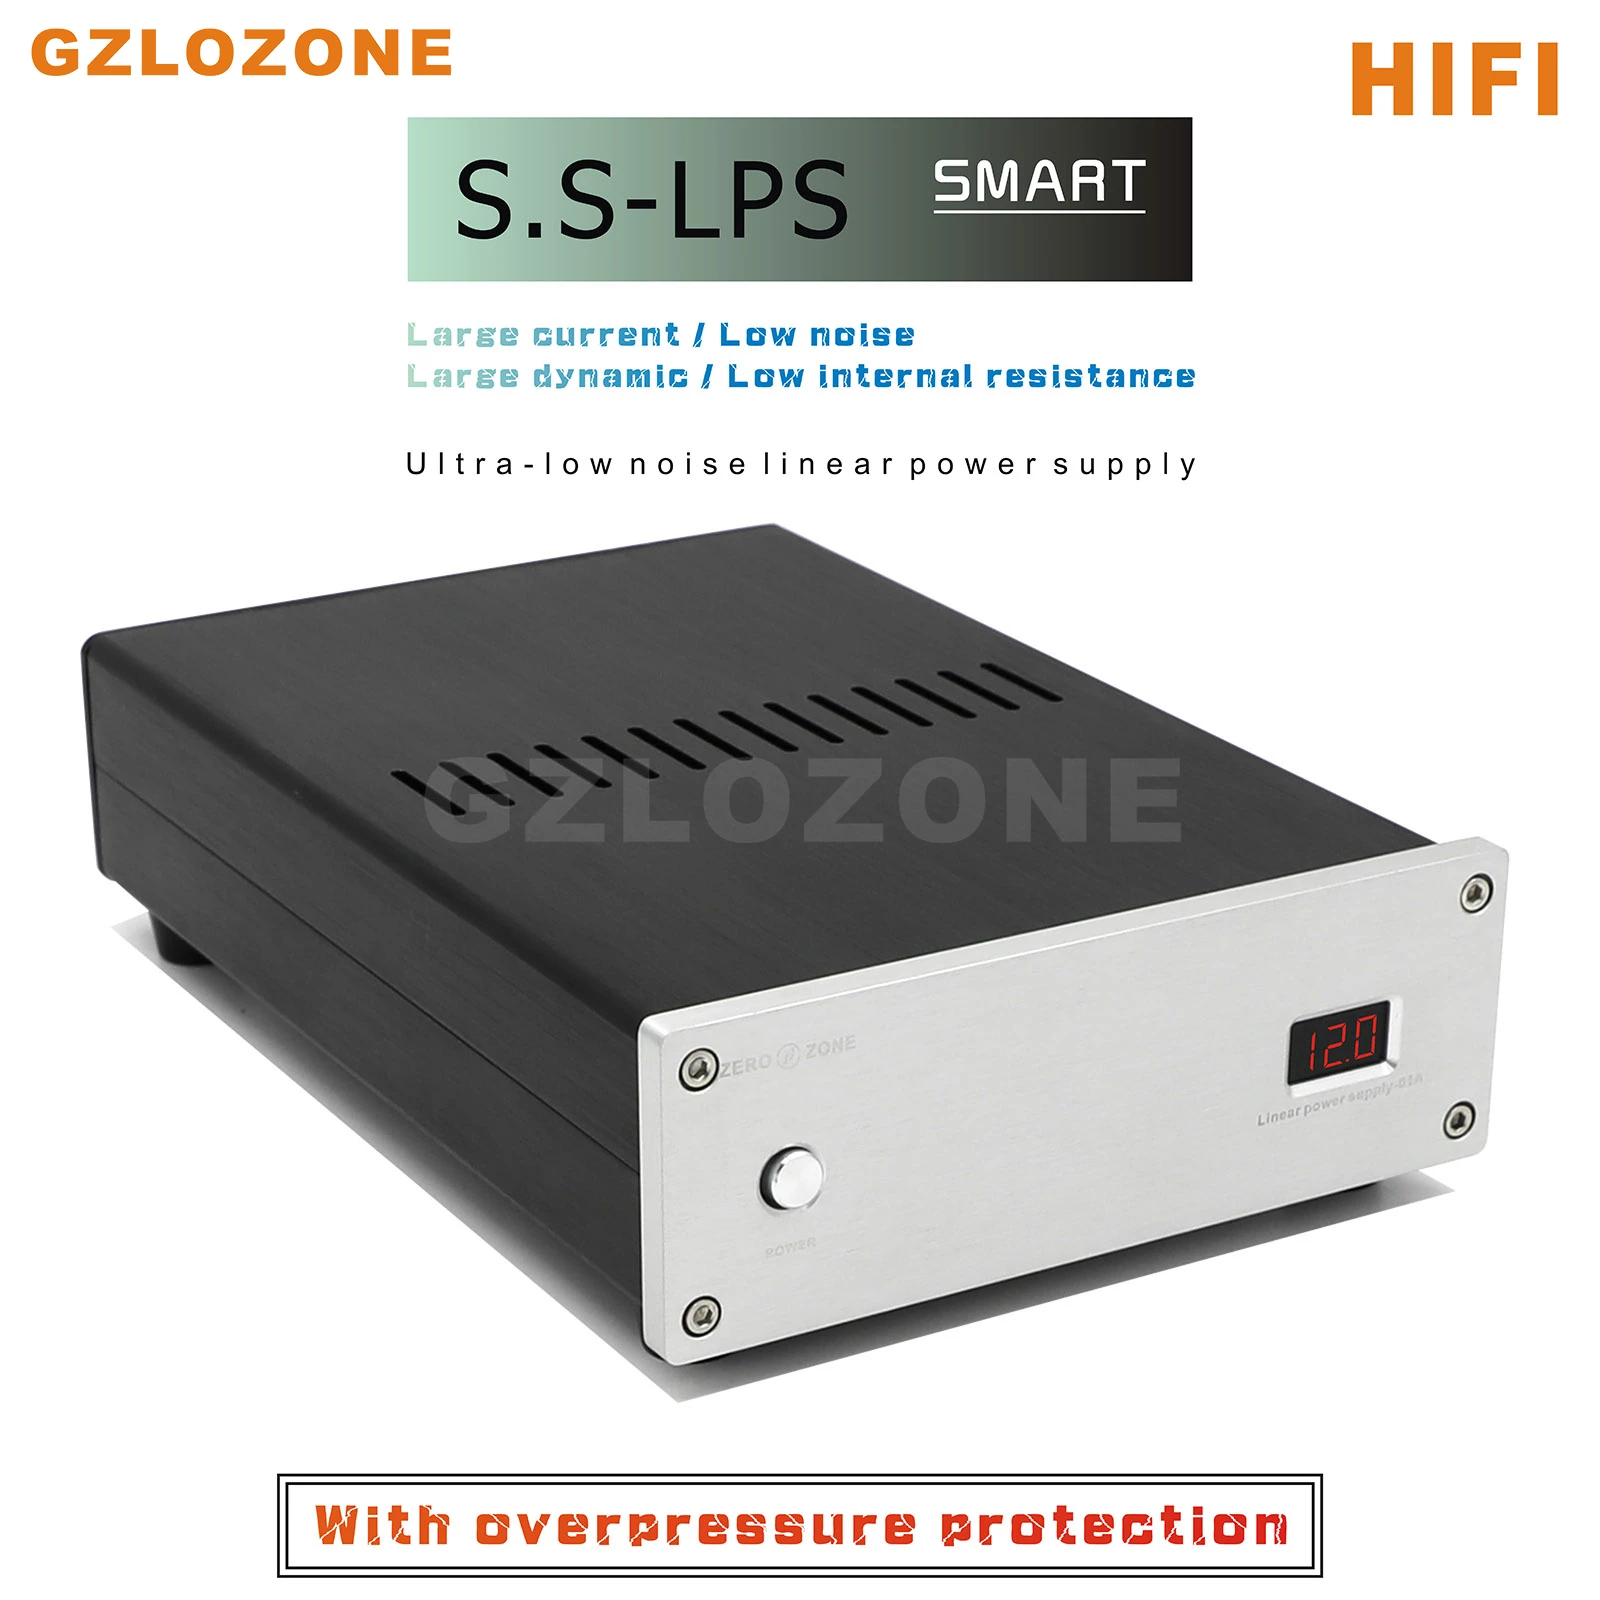 

Smart Ver HIFI S.S-LPS-1706A Ultra-low noise Linear power supply DC 5V/9V/12V/15V/18V/19V With overpressure protection